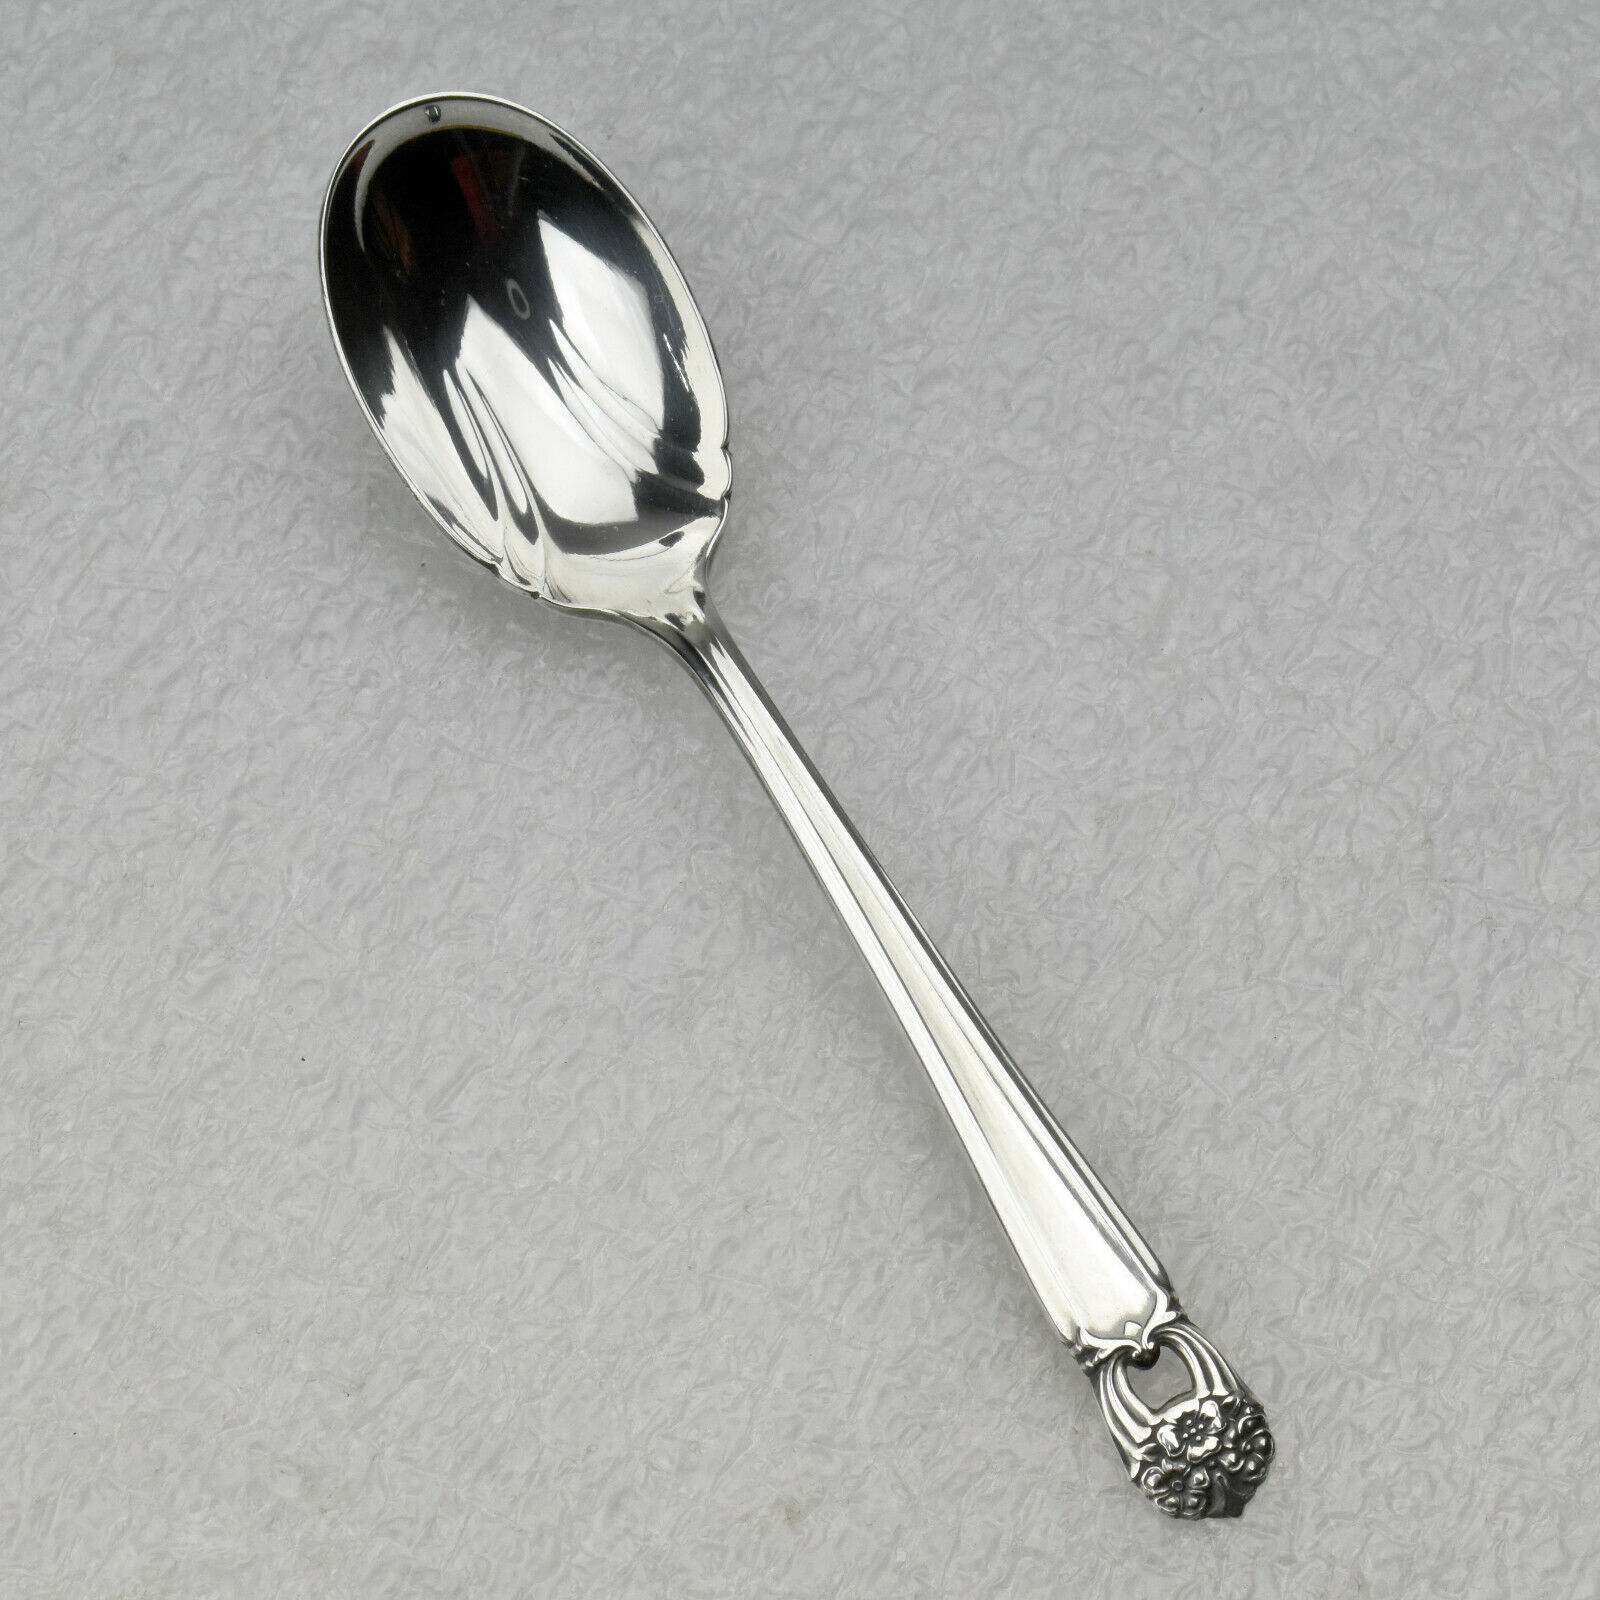 International Silver Silverplate 1941 ETERNALLY YOURS Sugar Spoon Flatware